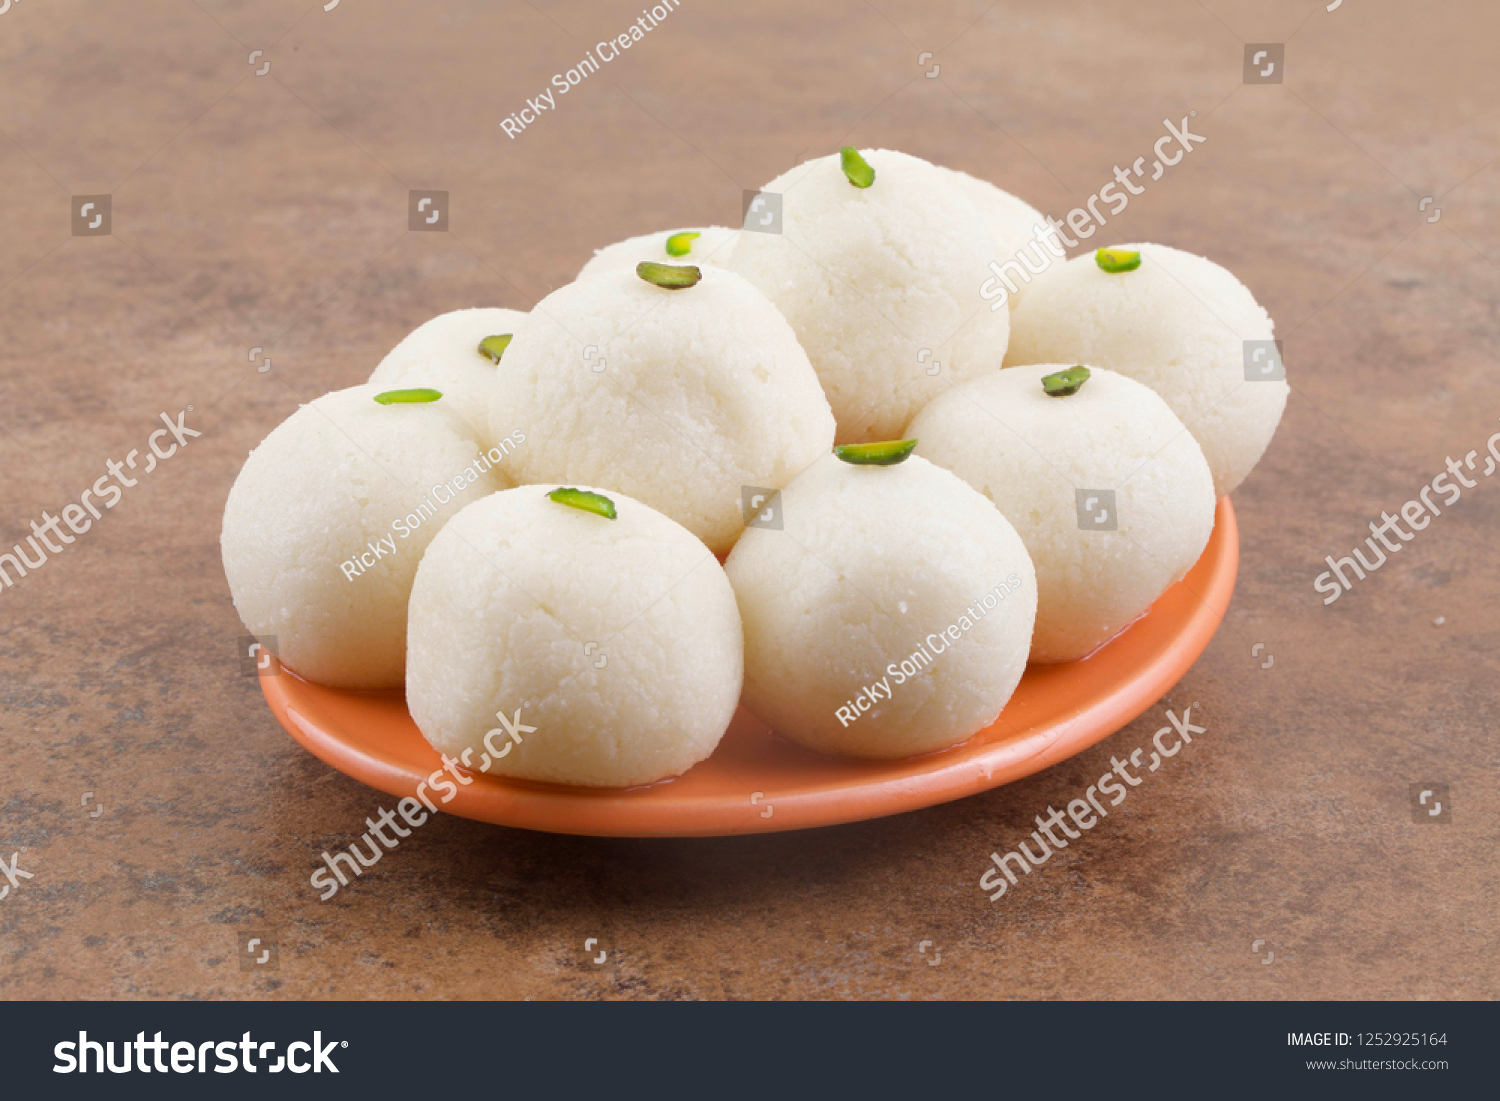 インドの甘いラスグラは ロソゴラ ロショゴラ ラサゴラ ラス グラ アングリ ラスグラ アンゴーリ ラスグルラとしても知られ インドで人気のある甘いデザートです 玉型の団子で作られる の写真素材 今すぐ編集